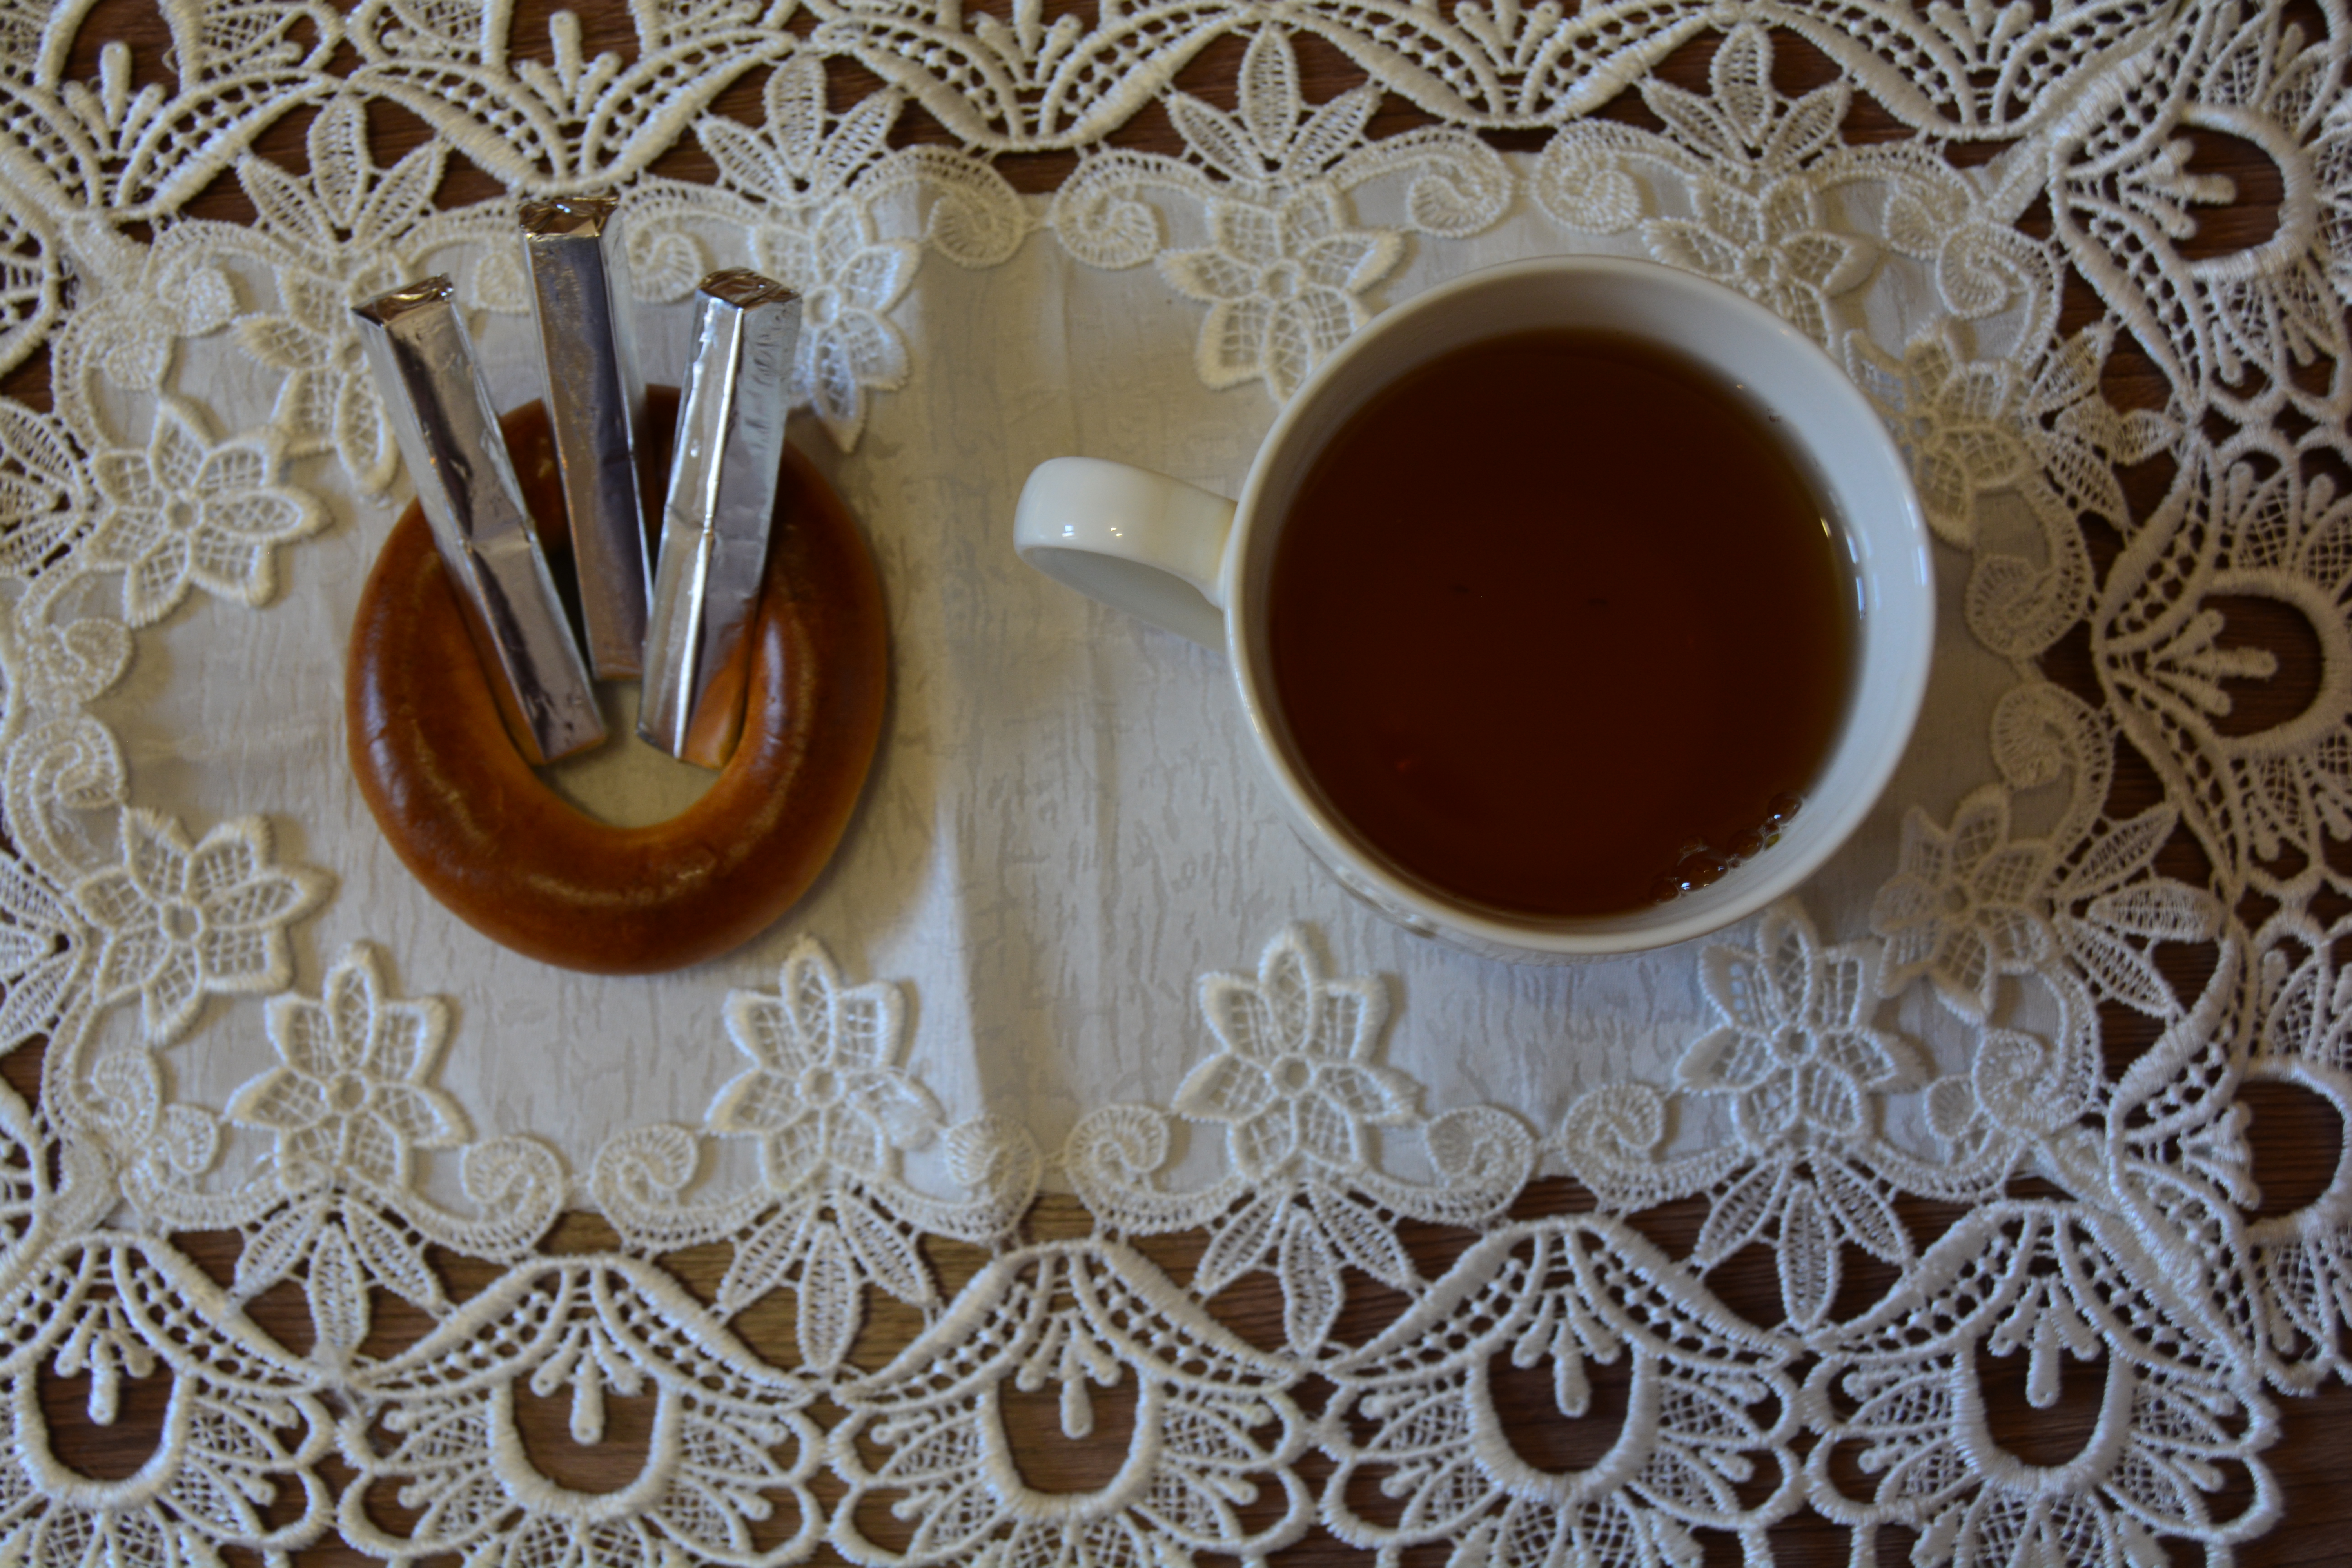 Натюрморт чашки чая на кружевной скатерти